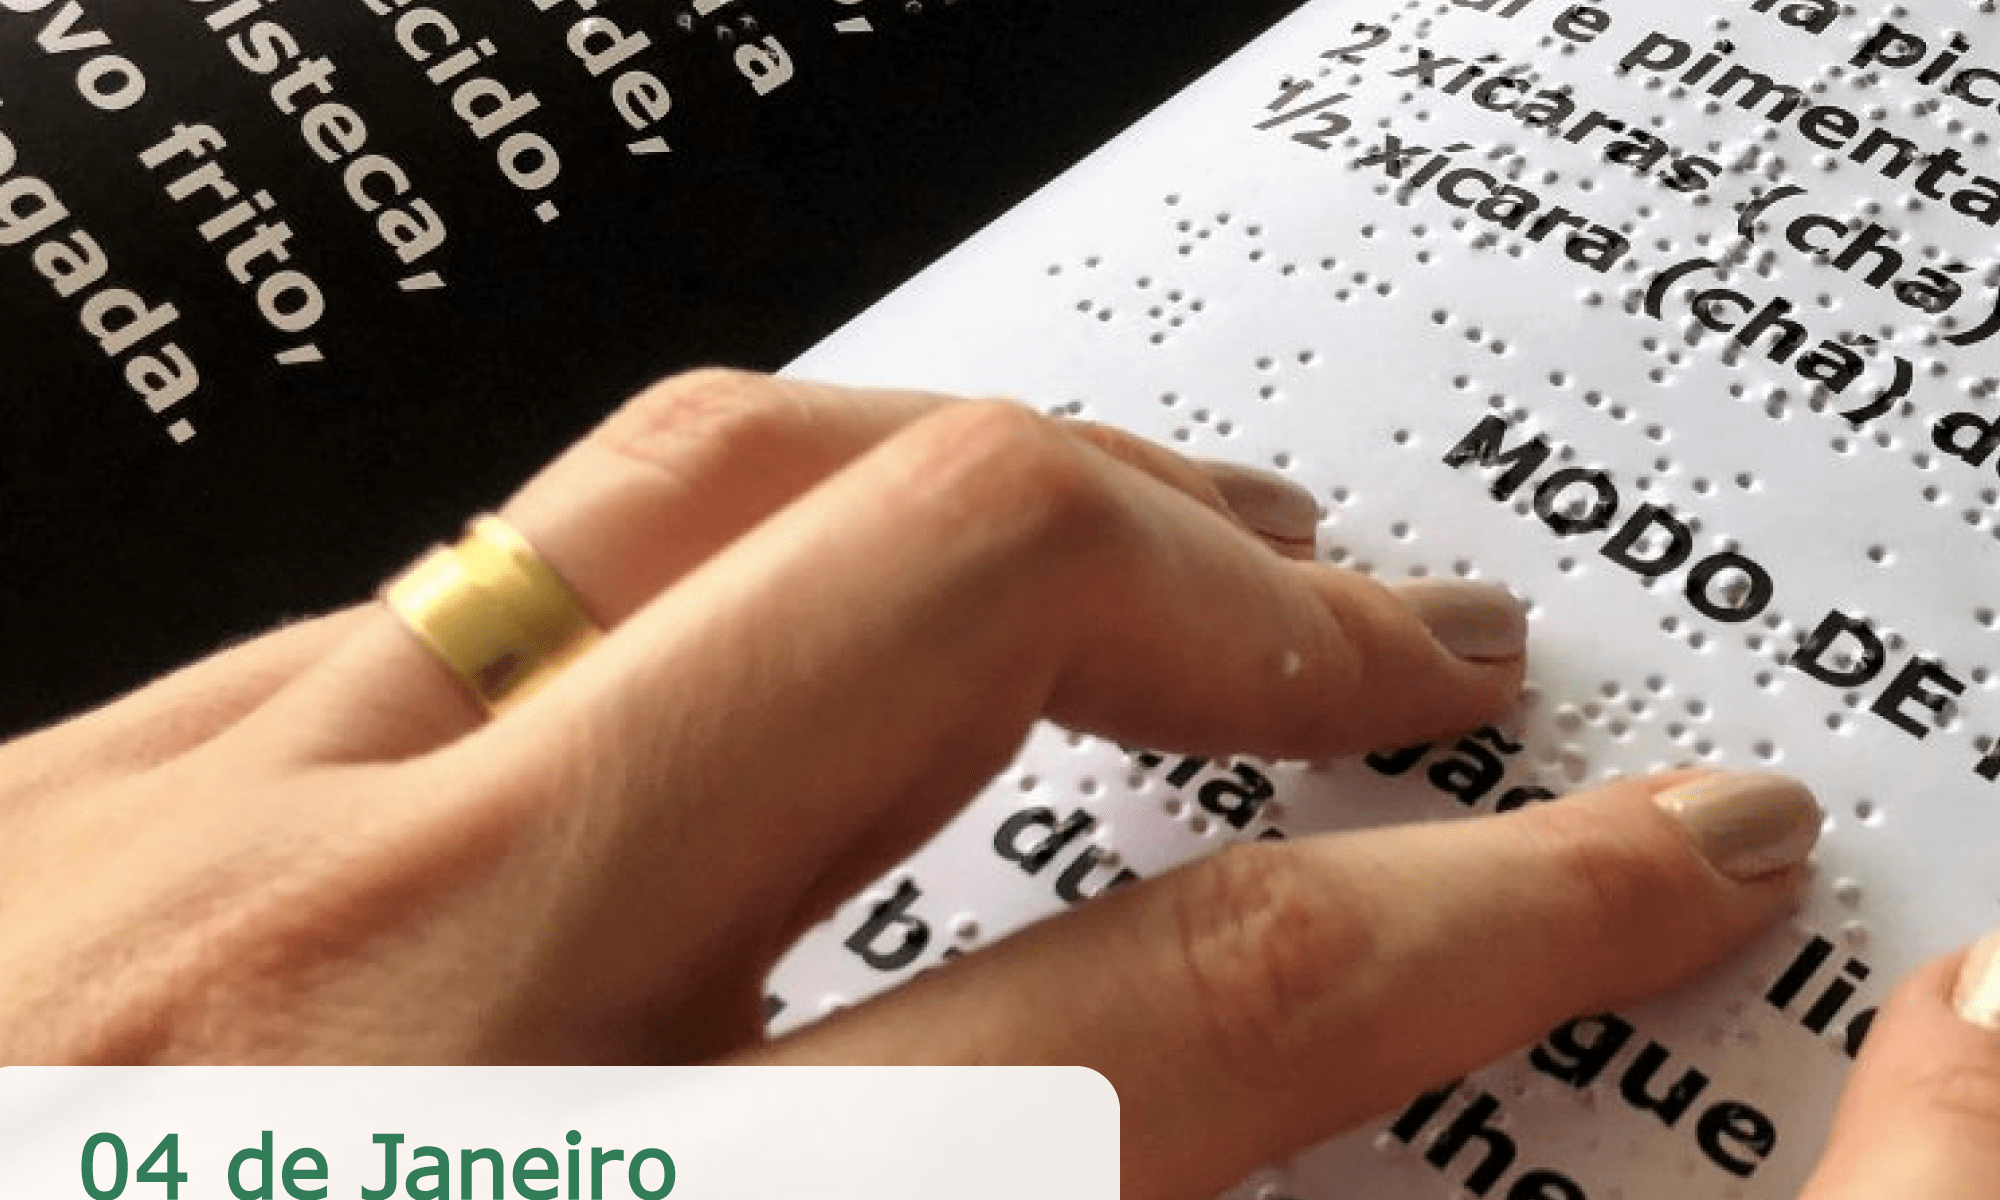 #PraCegoVer imagem ilustrativa de uma pessoa lendo uma receita. O papel tem a impressão Braile e as letras ampliadas.